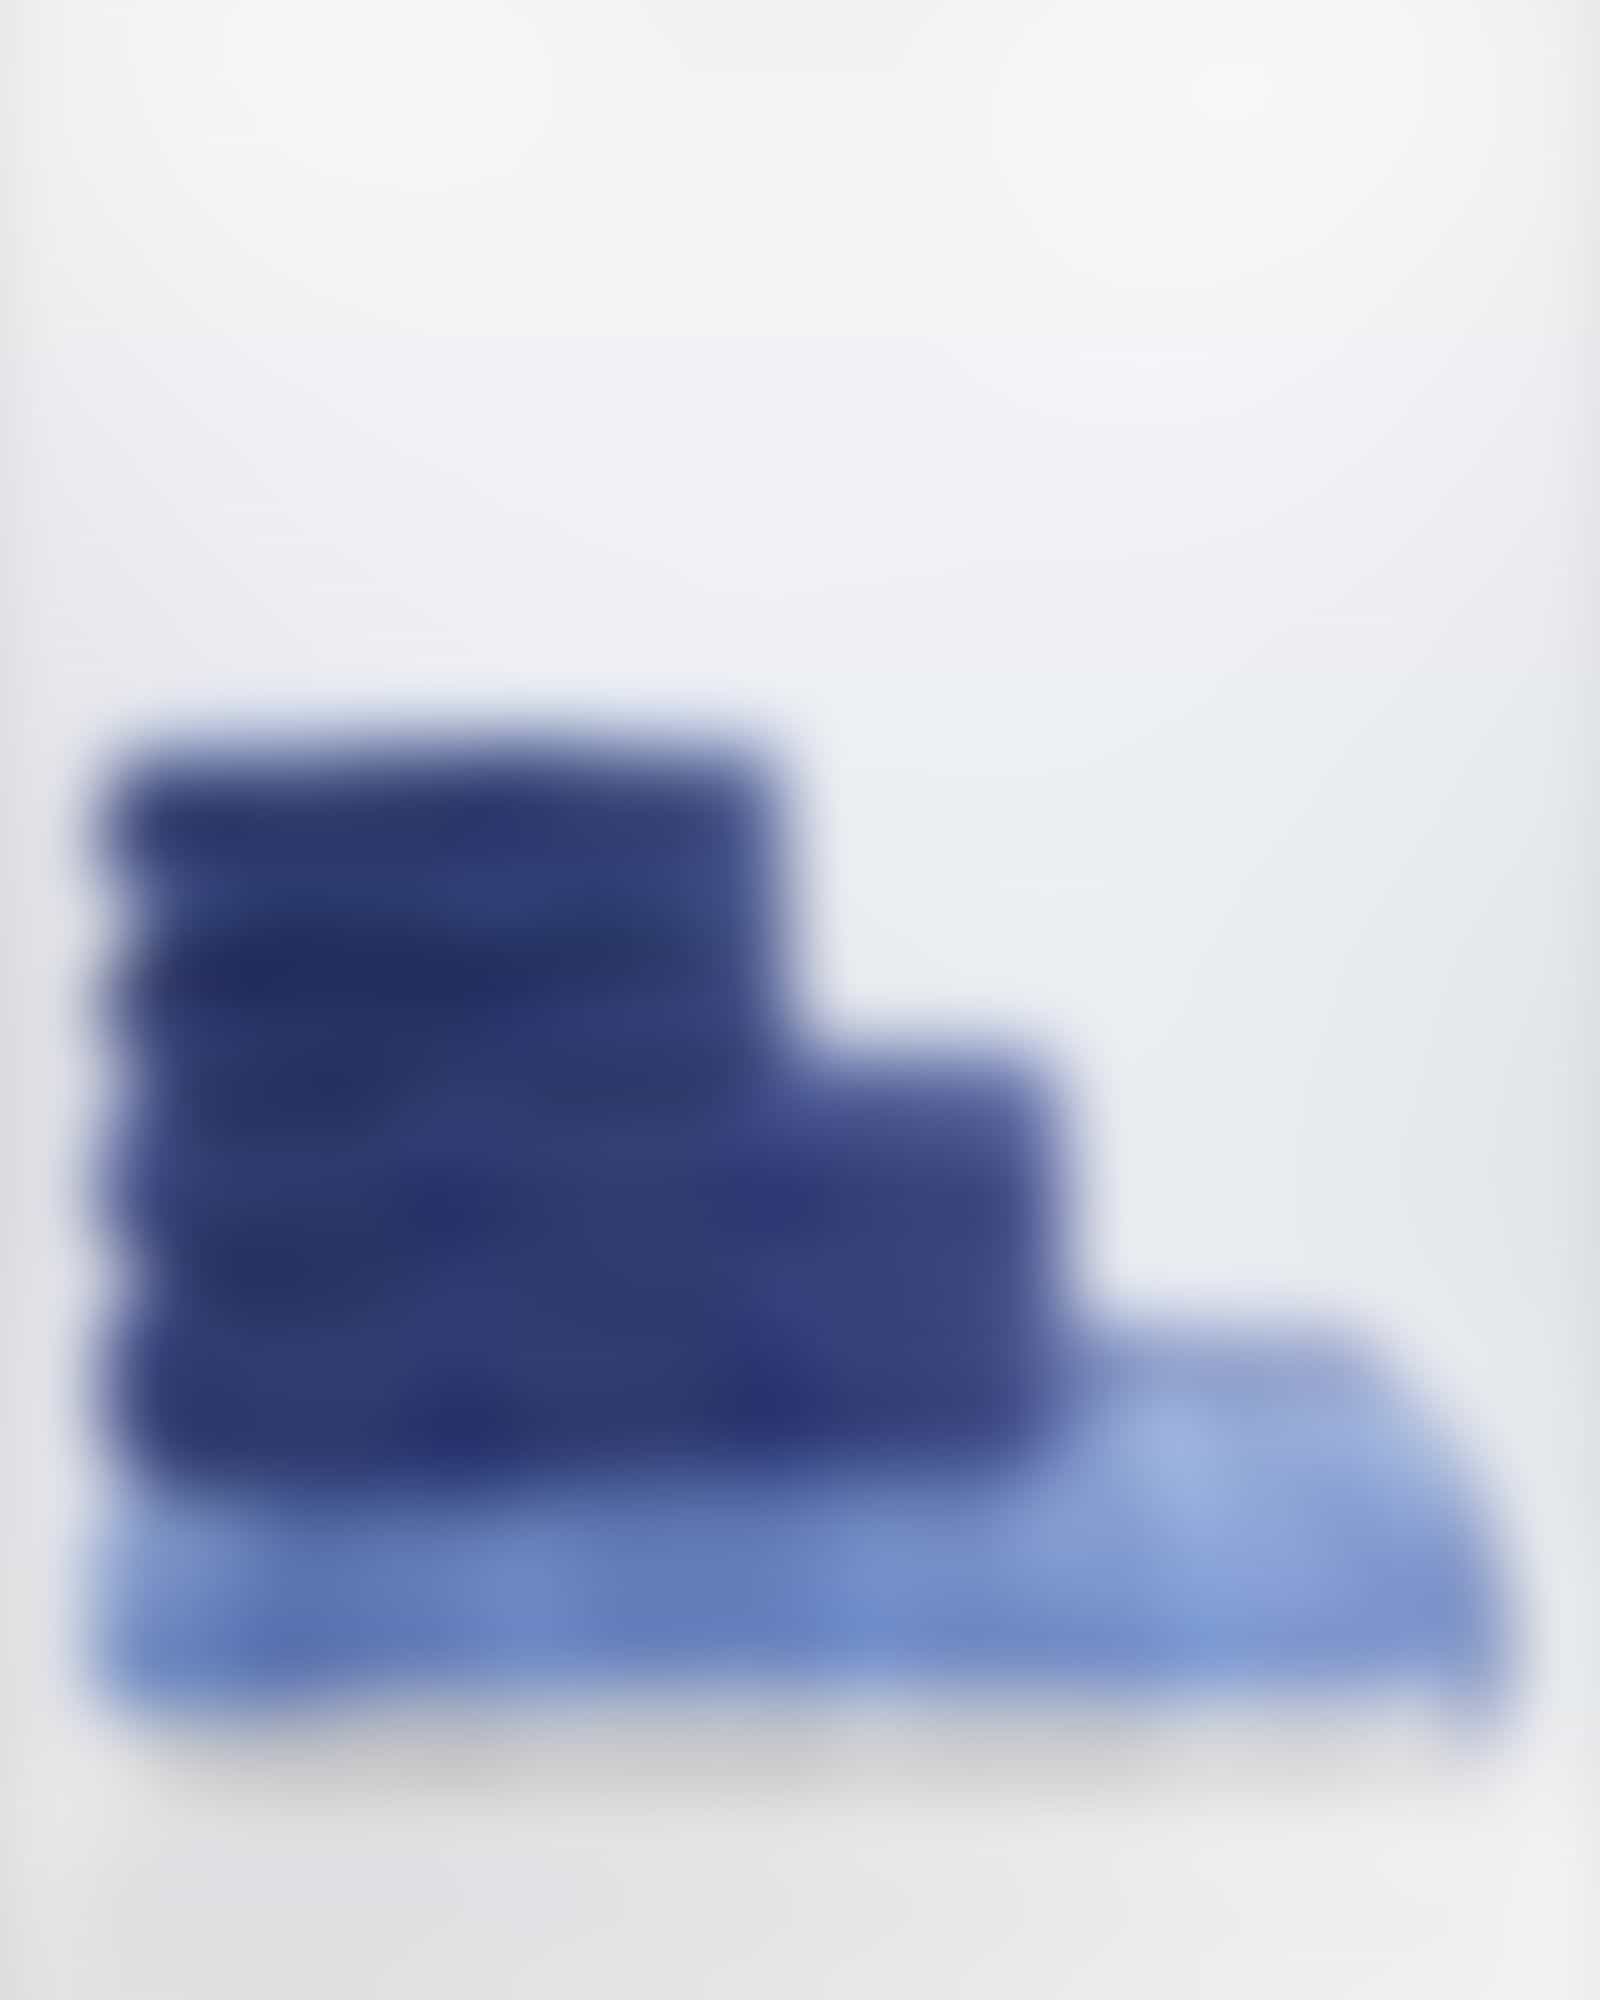 Cawö Handtücher Noblesse Stripe 1087 - Farbe: saphir - 11 - Handtuch 50x100 cm